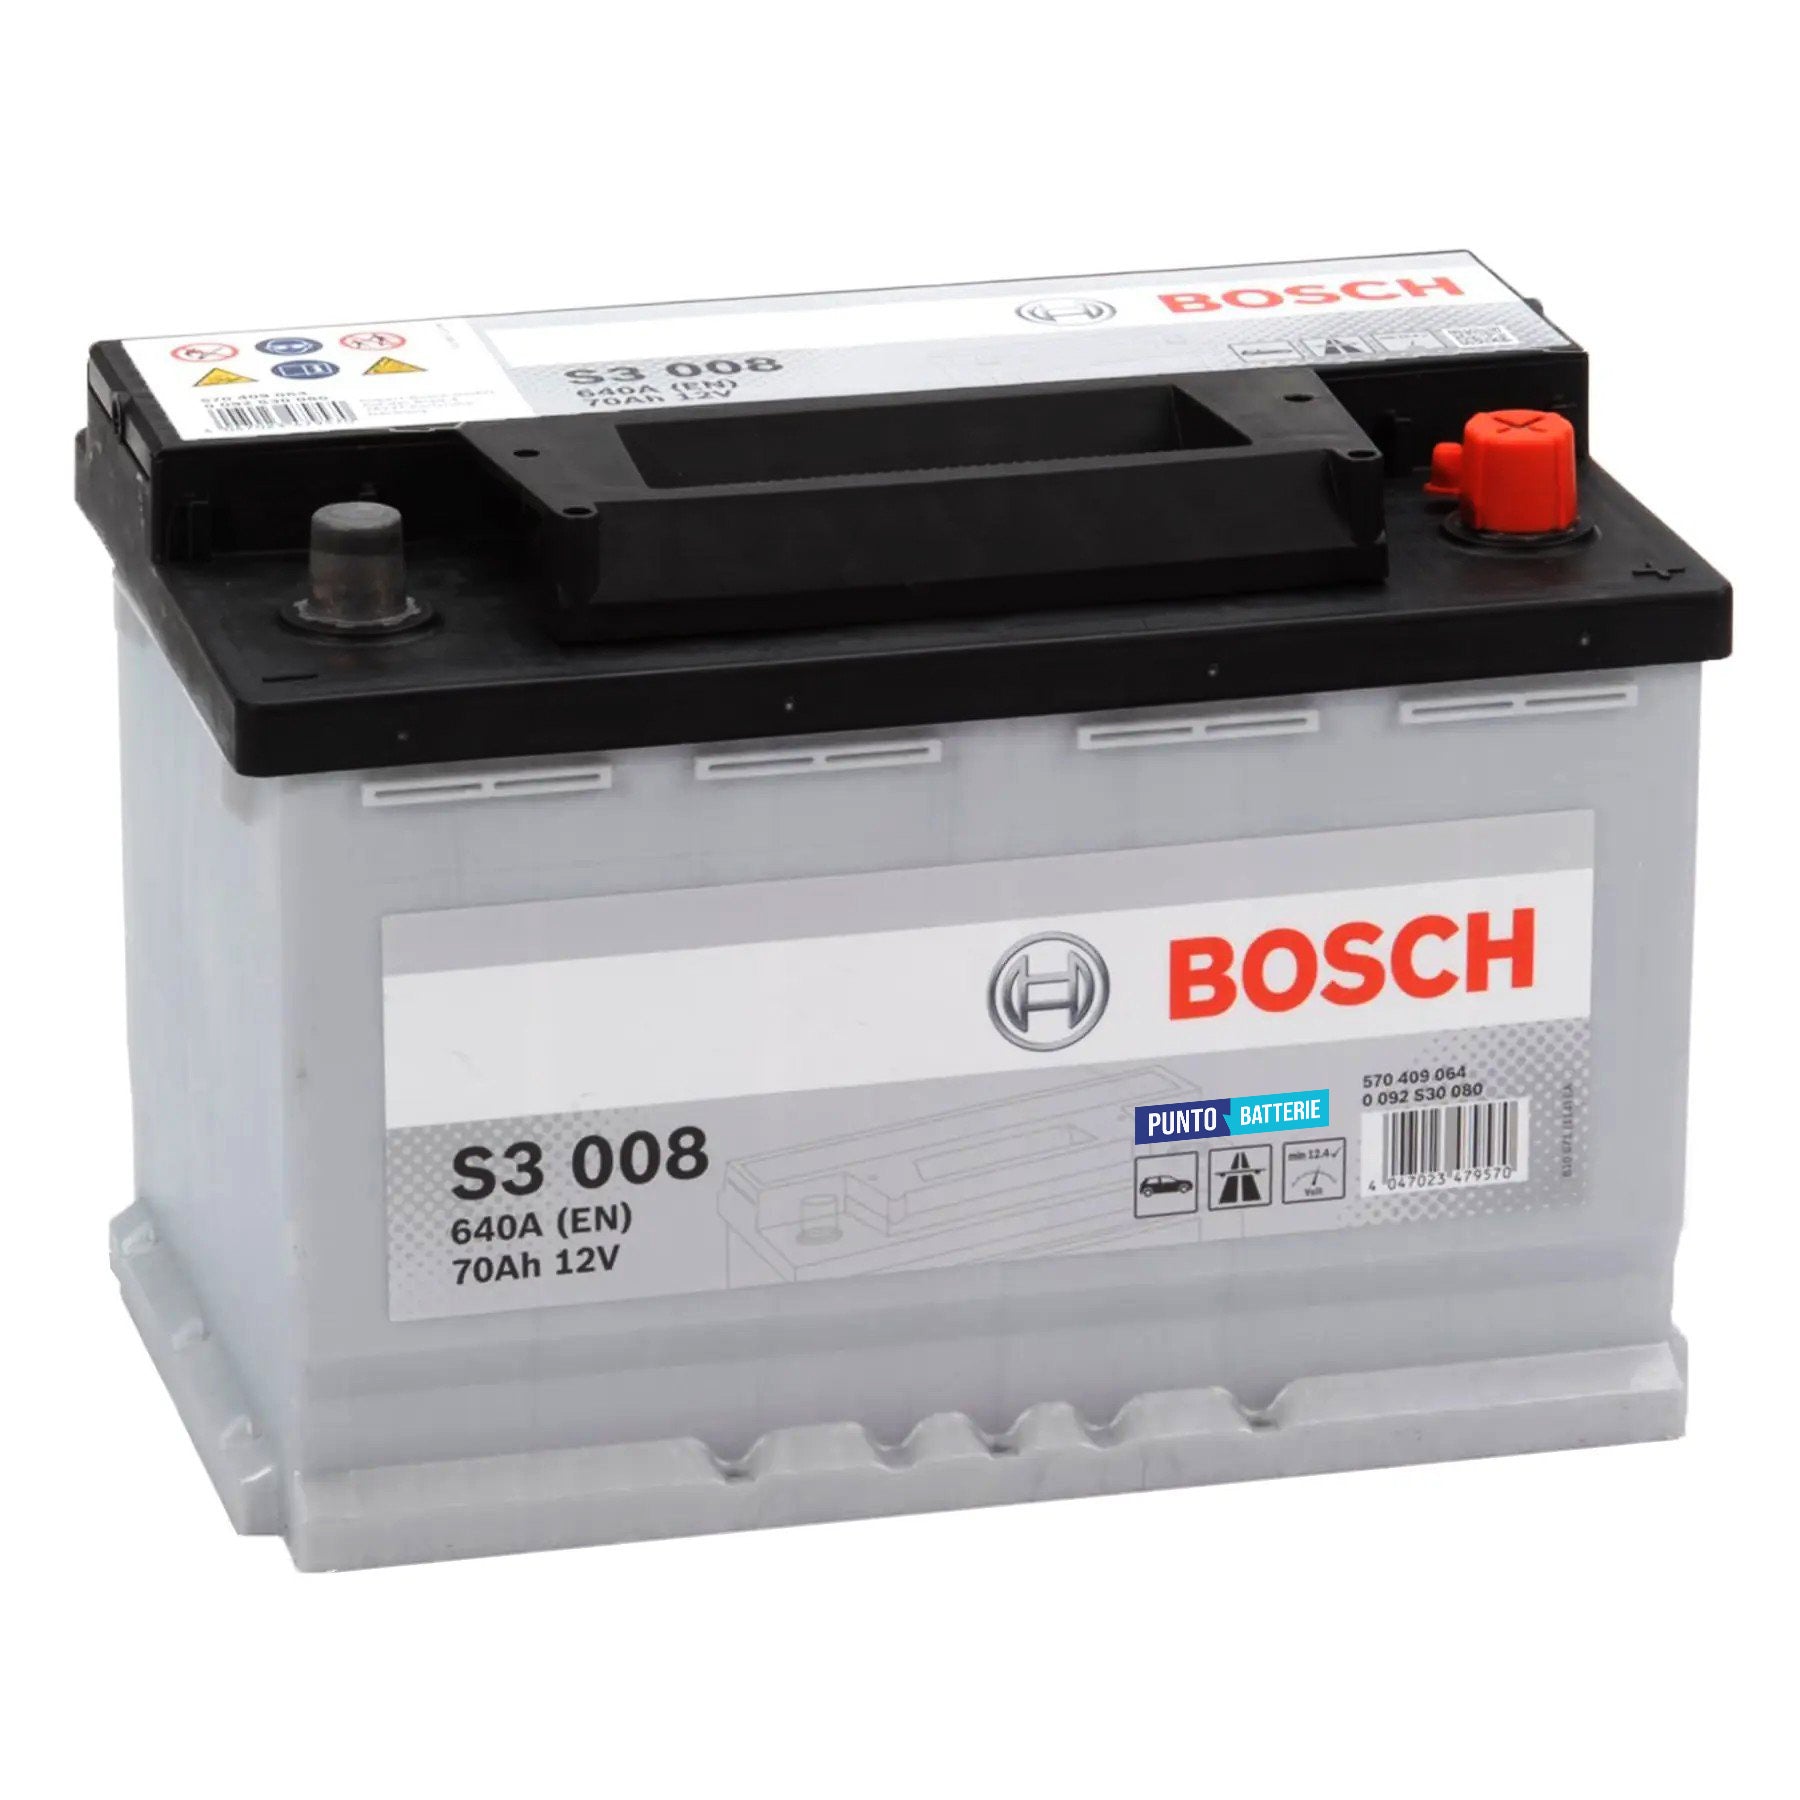 Batteria originale Bosch S3 S3 008, dimensioni 278 x 175 x 190, polo positivo a destra, 12 volt, 70 amperora, 640 ampere. Batteria per auto e veicoli leggeri.